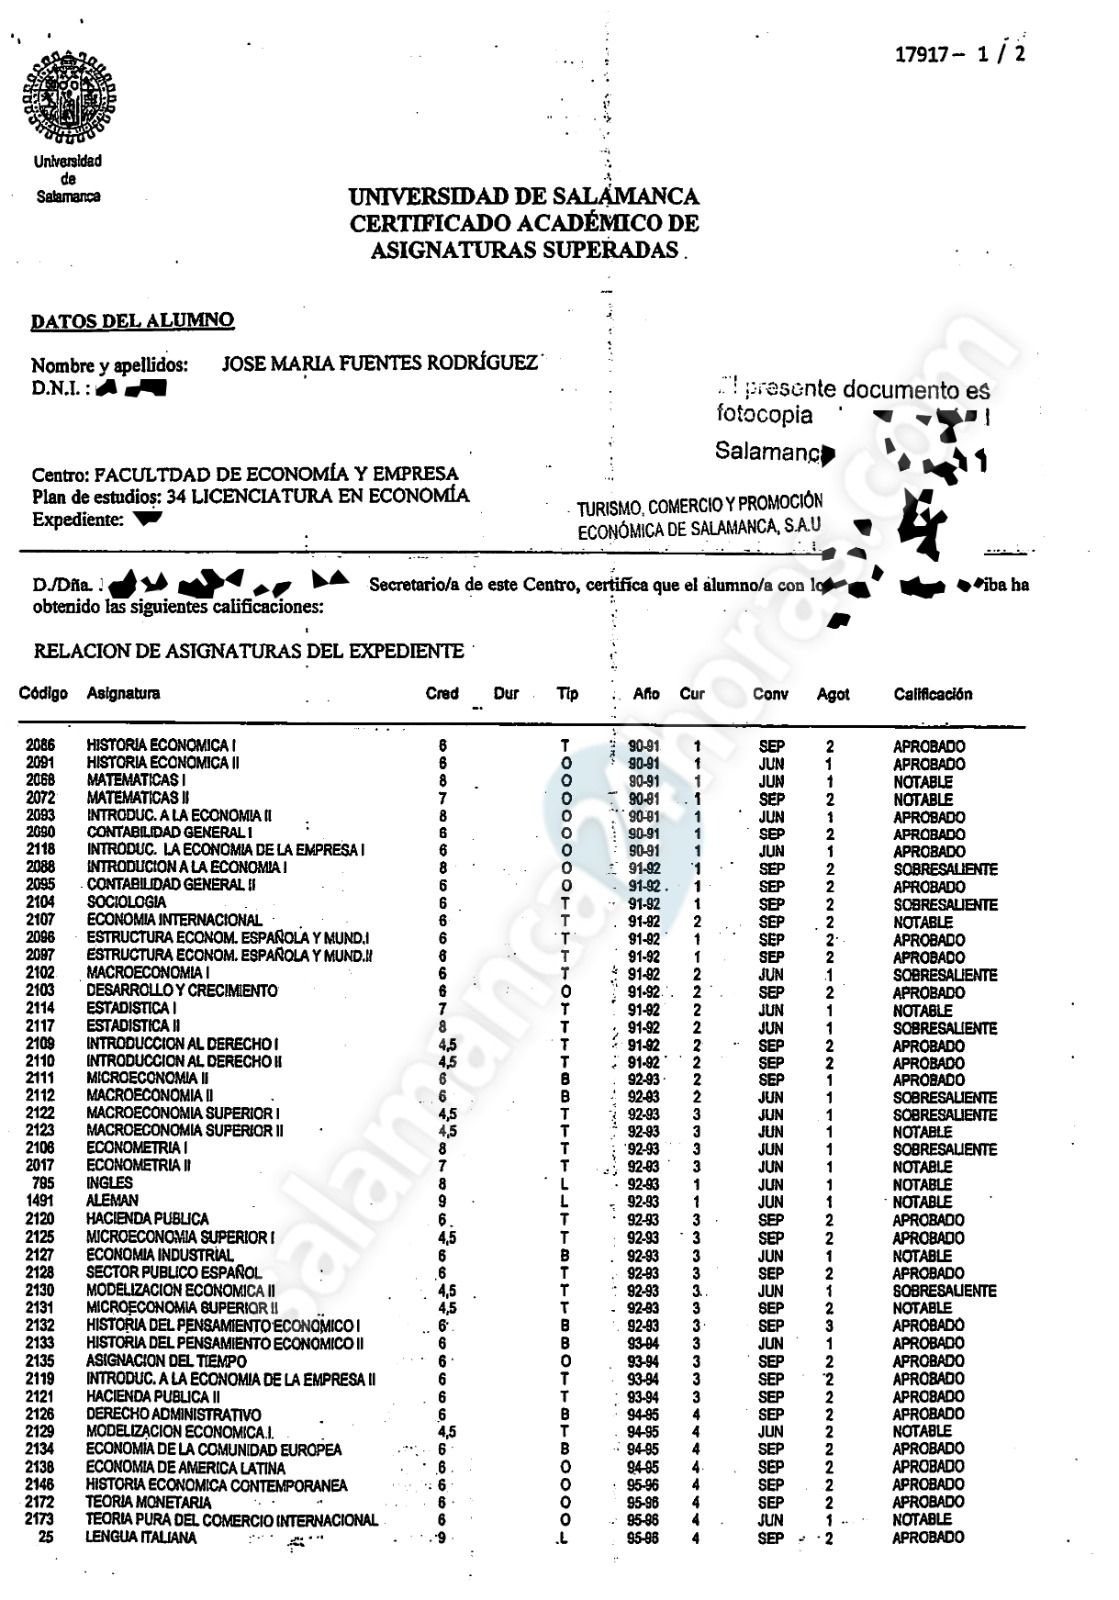 Informe falsificado presentado como notas de José María Fuentes